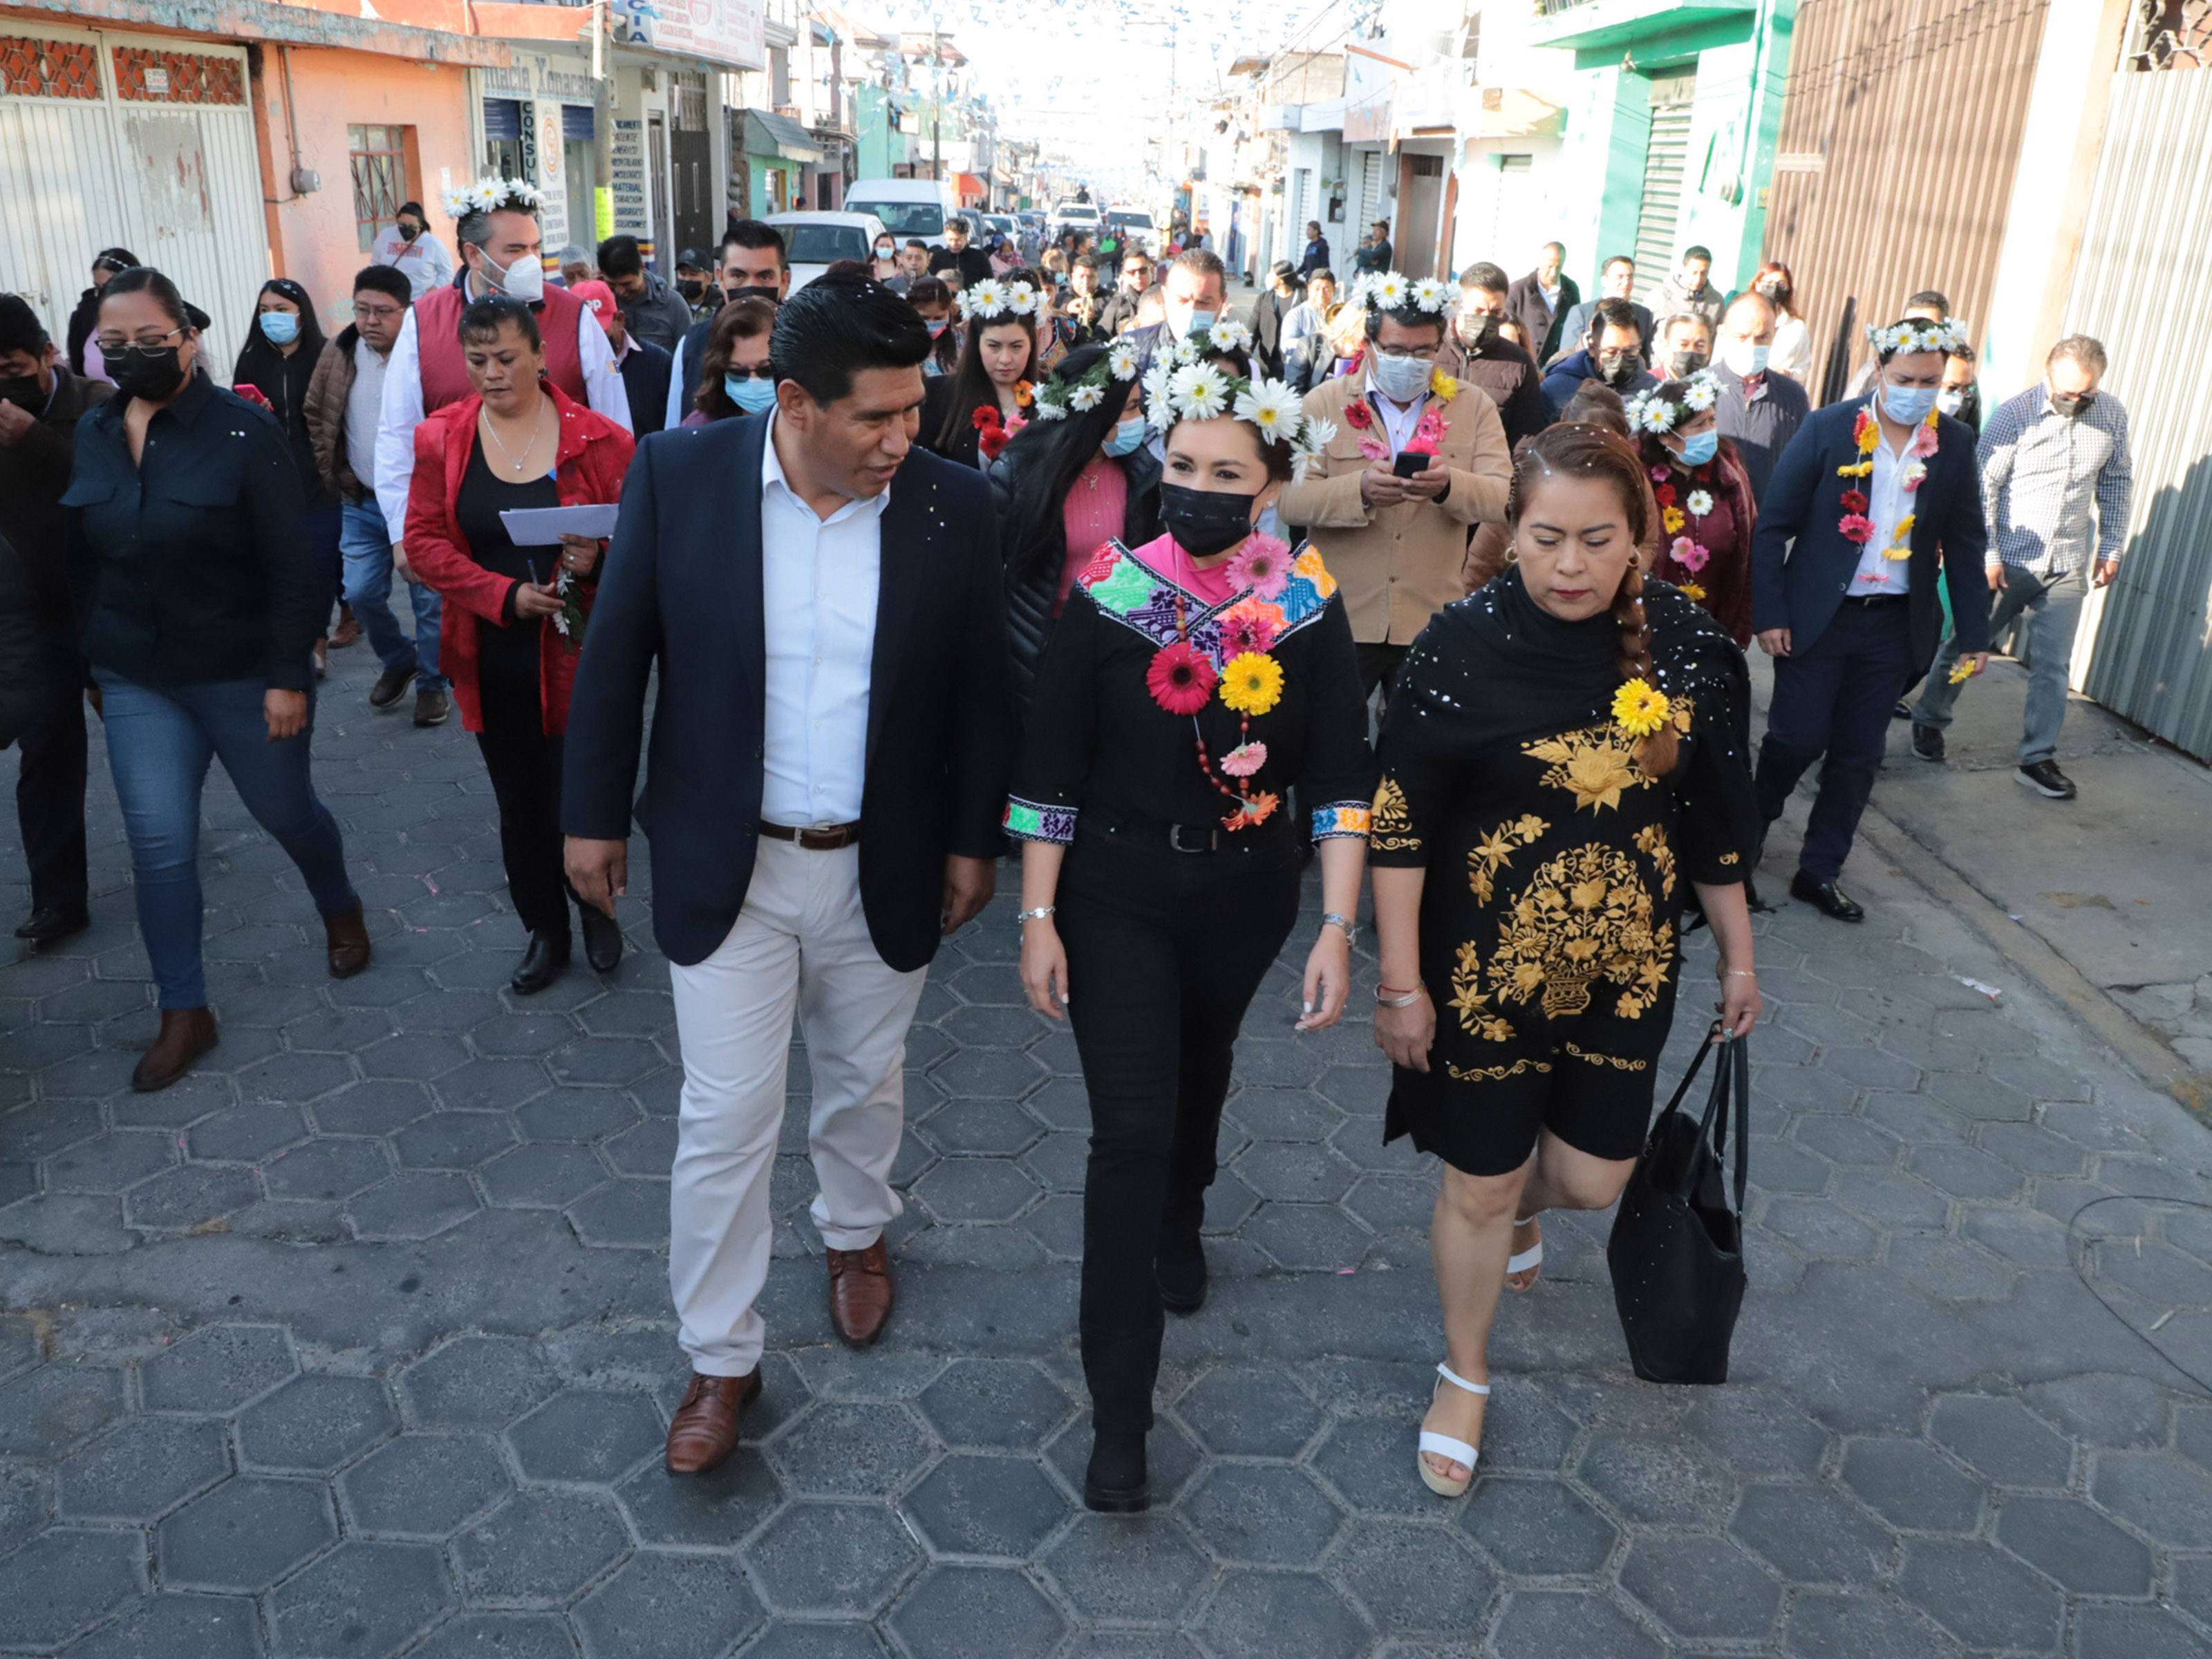 Con “Viernes de las Mujeres”, Gobierno del Estado beneficia a poblanas de Xonacatepec